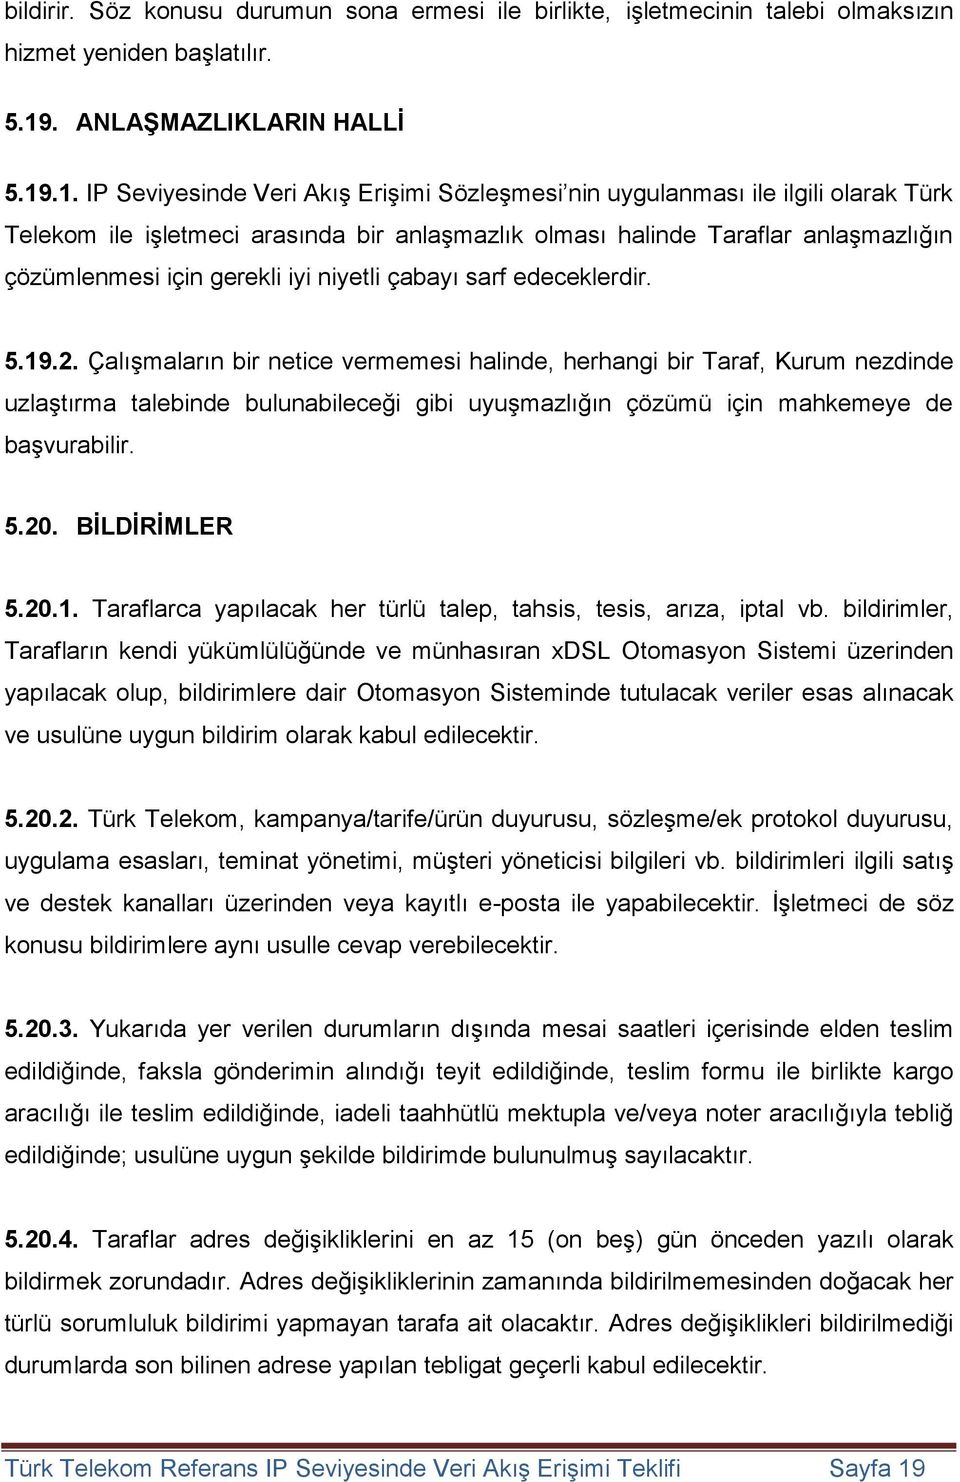 .1. IP Seviyesinde Veri Akış Erişimi Sözleşmesi nin uygulanması ile ilgili olarak Türk Telekom ile işletmeci arasında bir anlaşmazlık olması halinde Taraflar anlaşmazlığın çözümlenmesi için gerekli